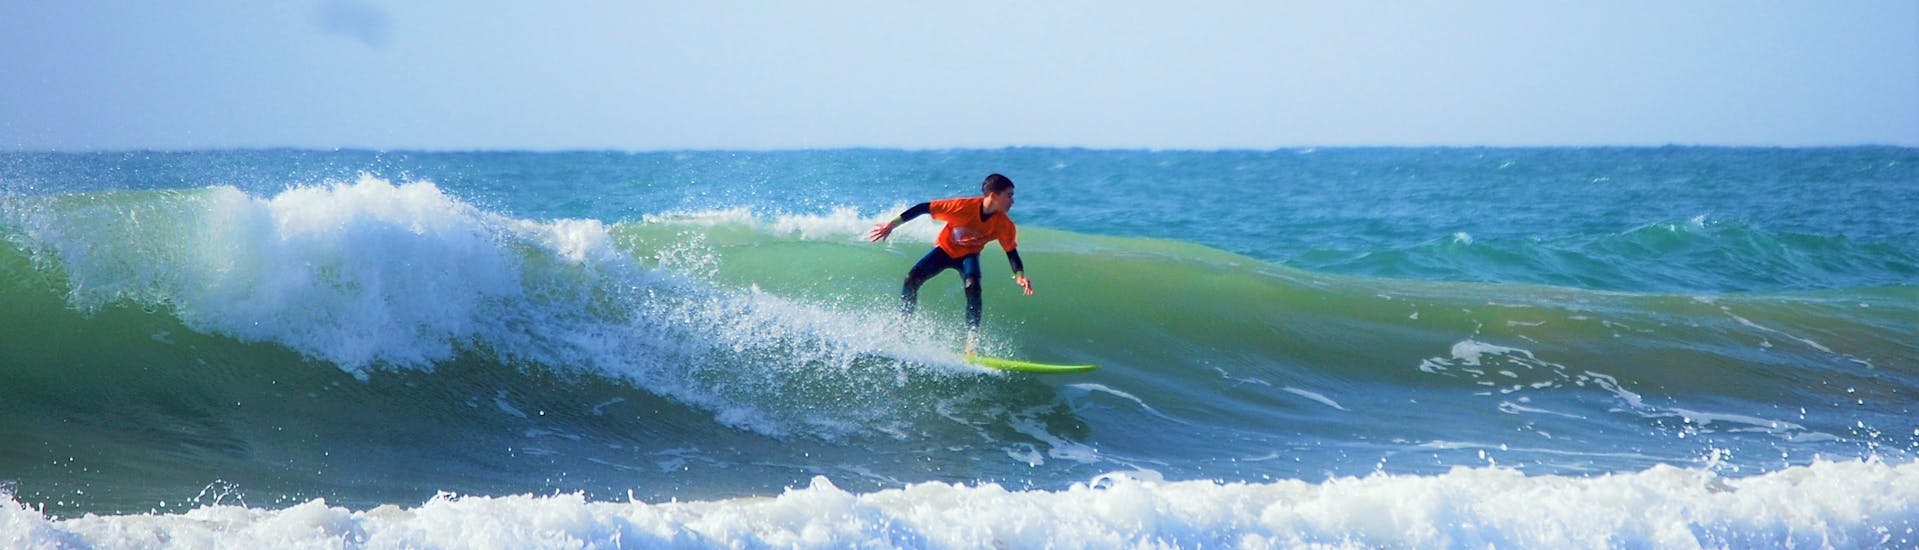 Curso de Surf Privado en Albufeira a partir de 7 años para principiantes.